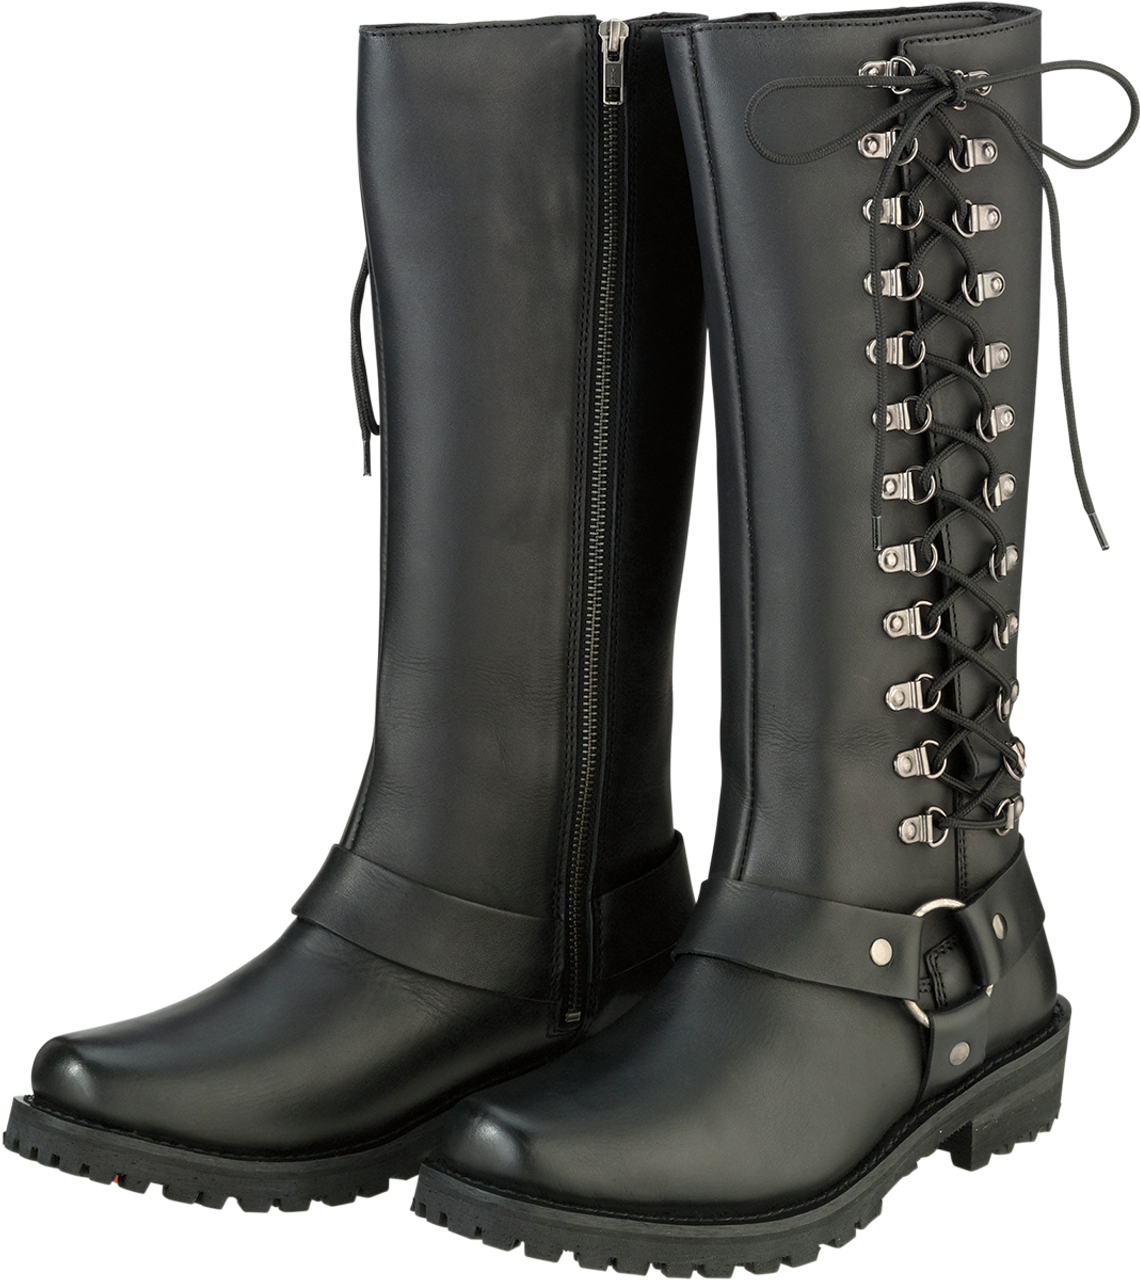 Womens Savage Boots - Black - Size 6 - Lutzka's Garage